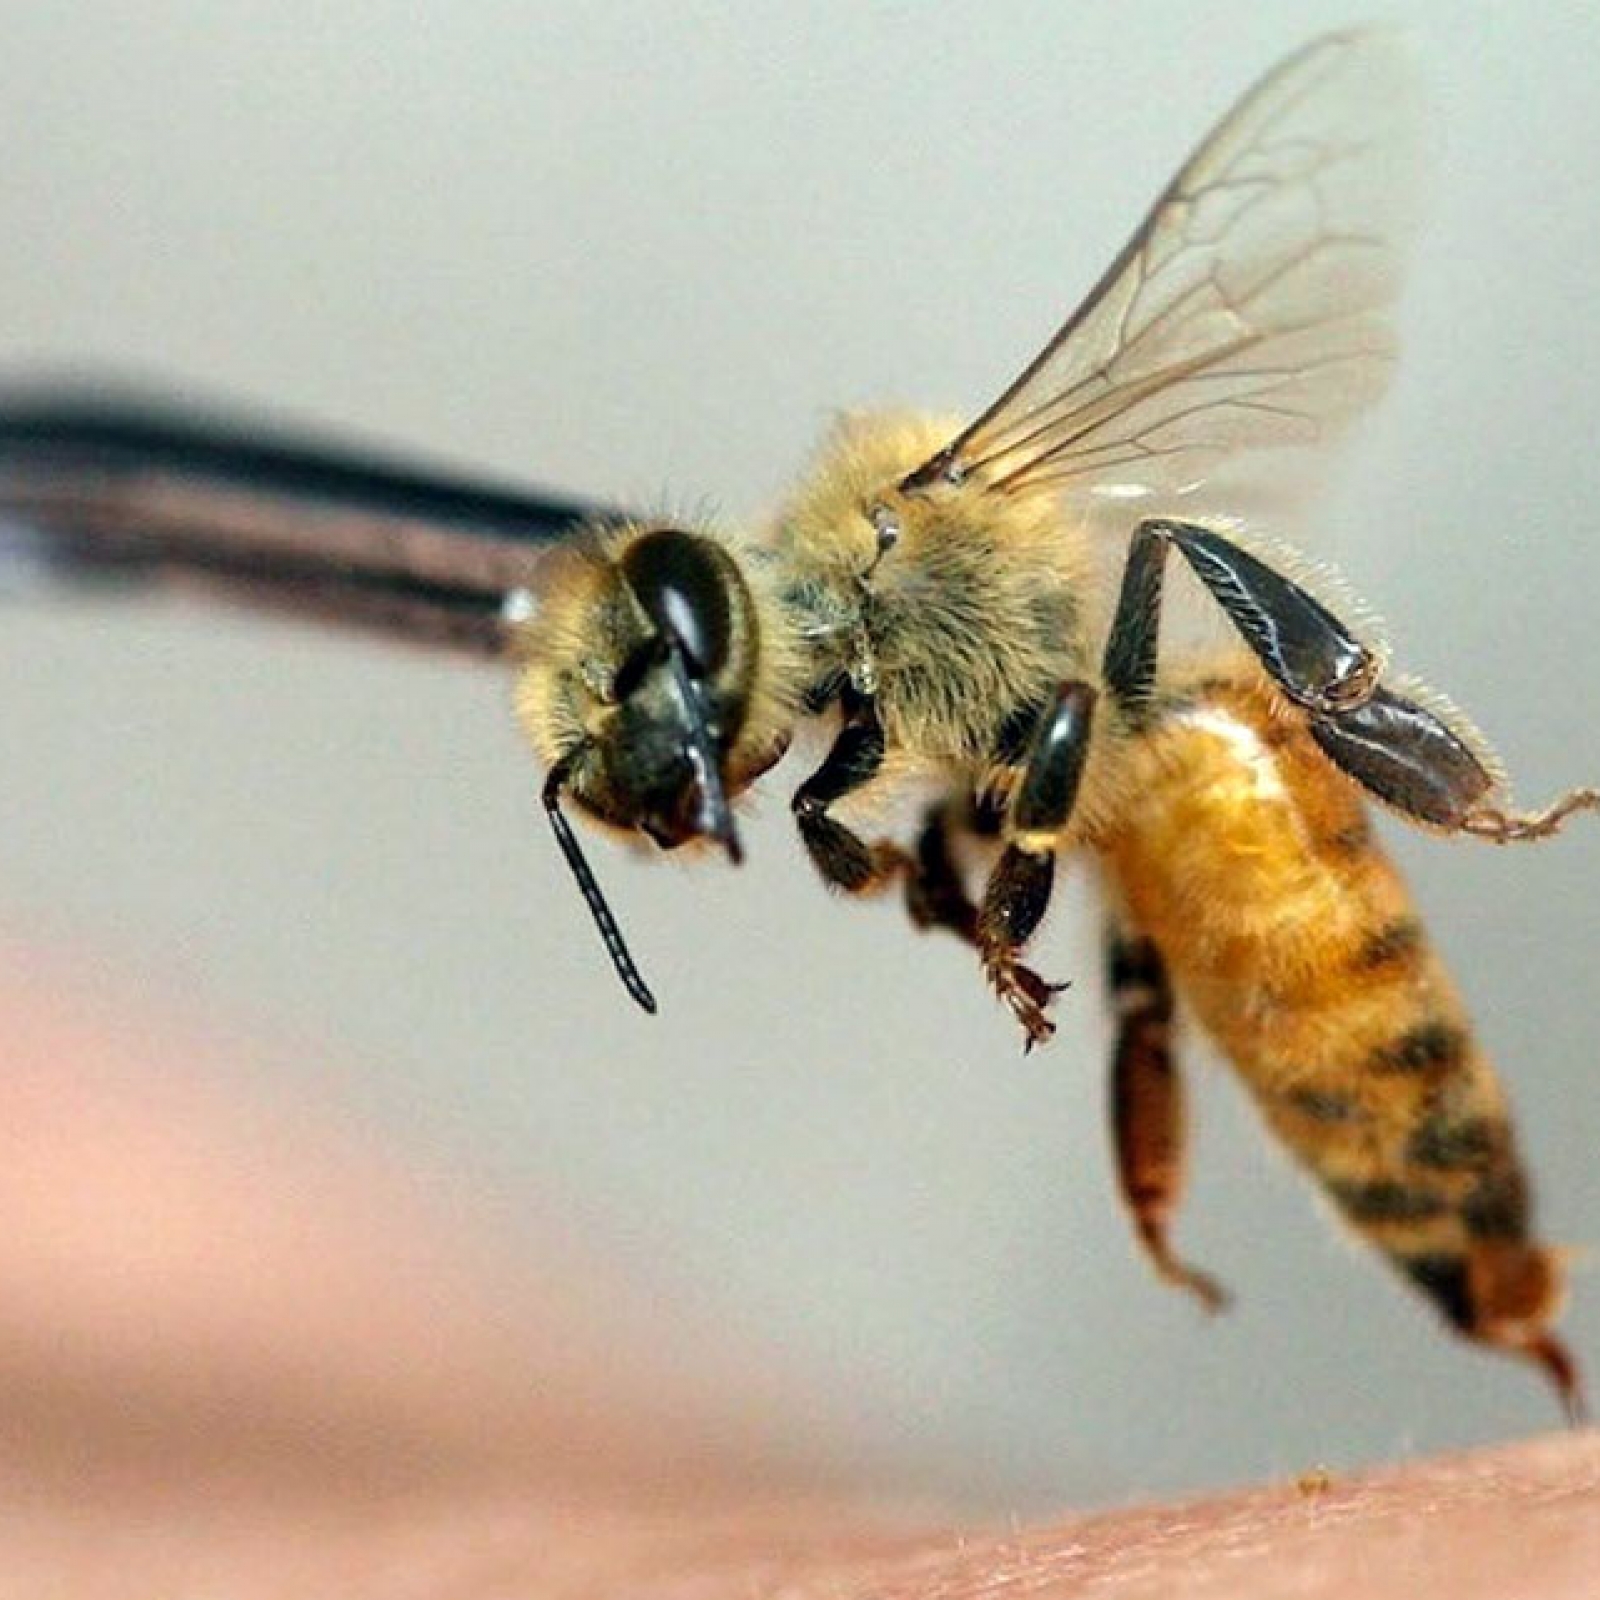 Лечение варикоза пиявками и пчелами | Польза или вред?